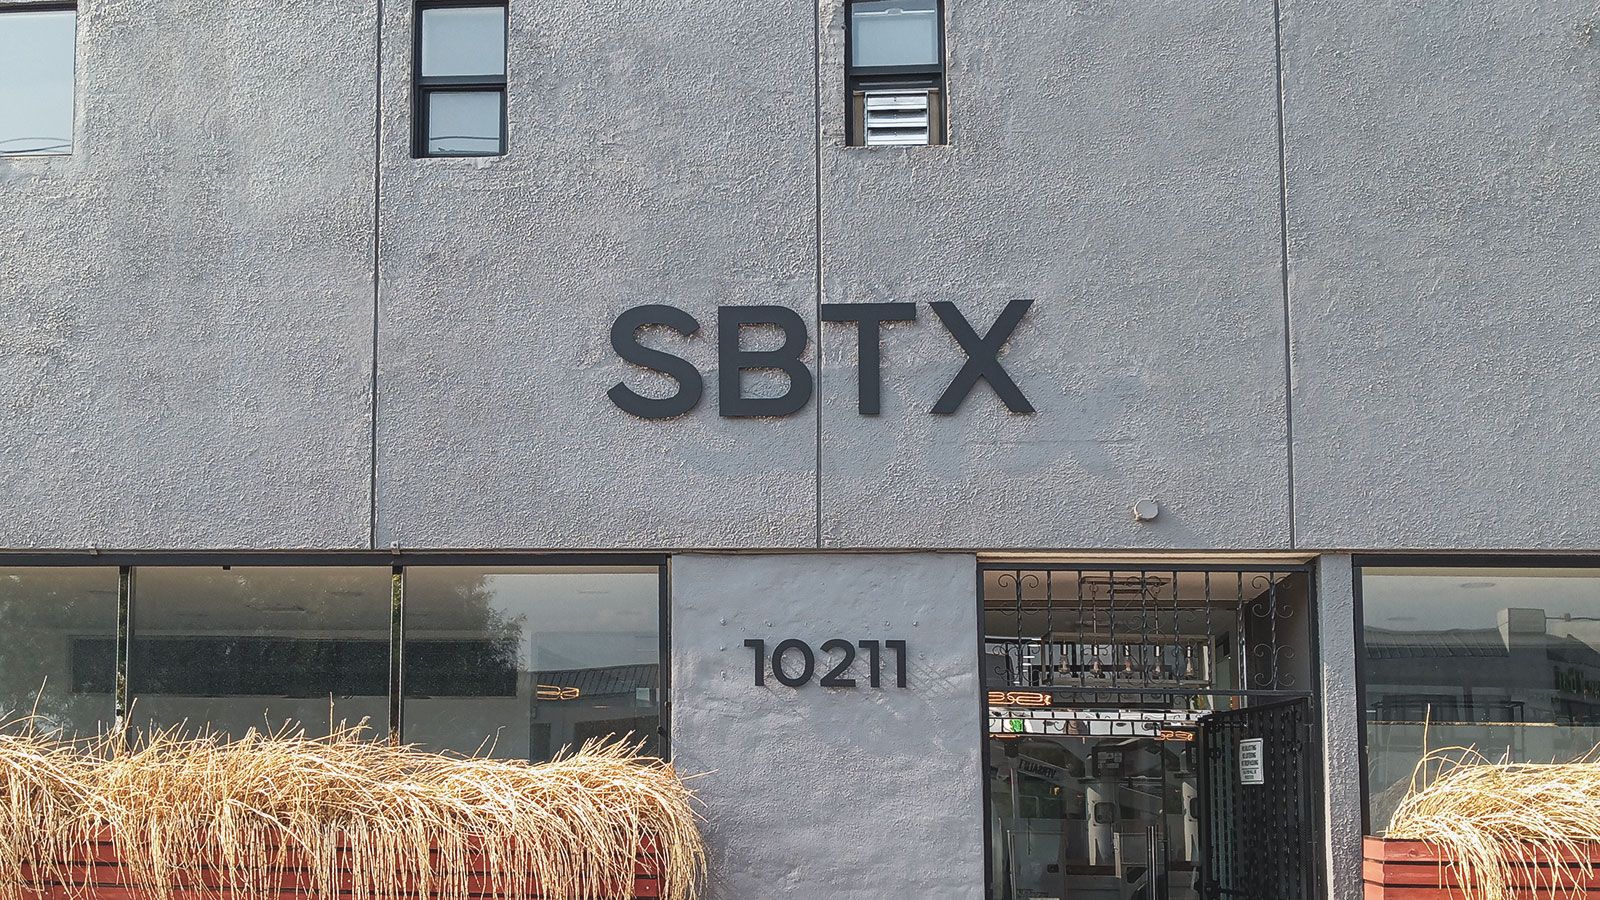 SBTX building signs